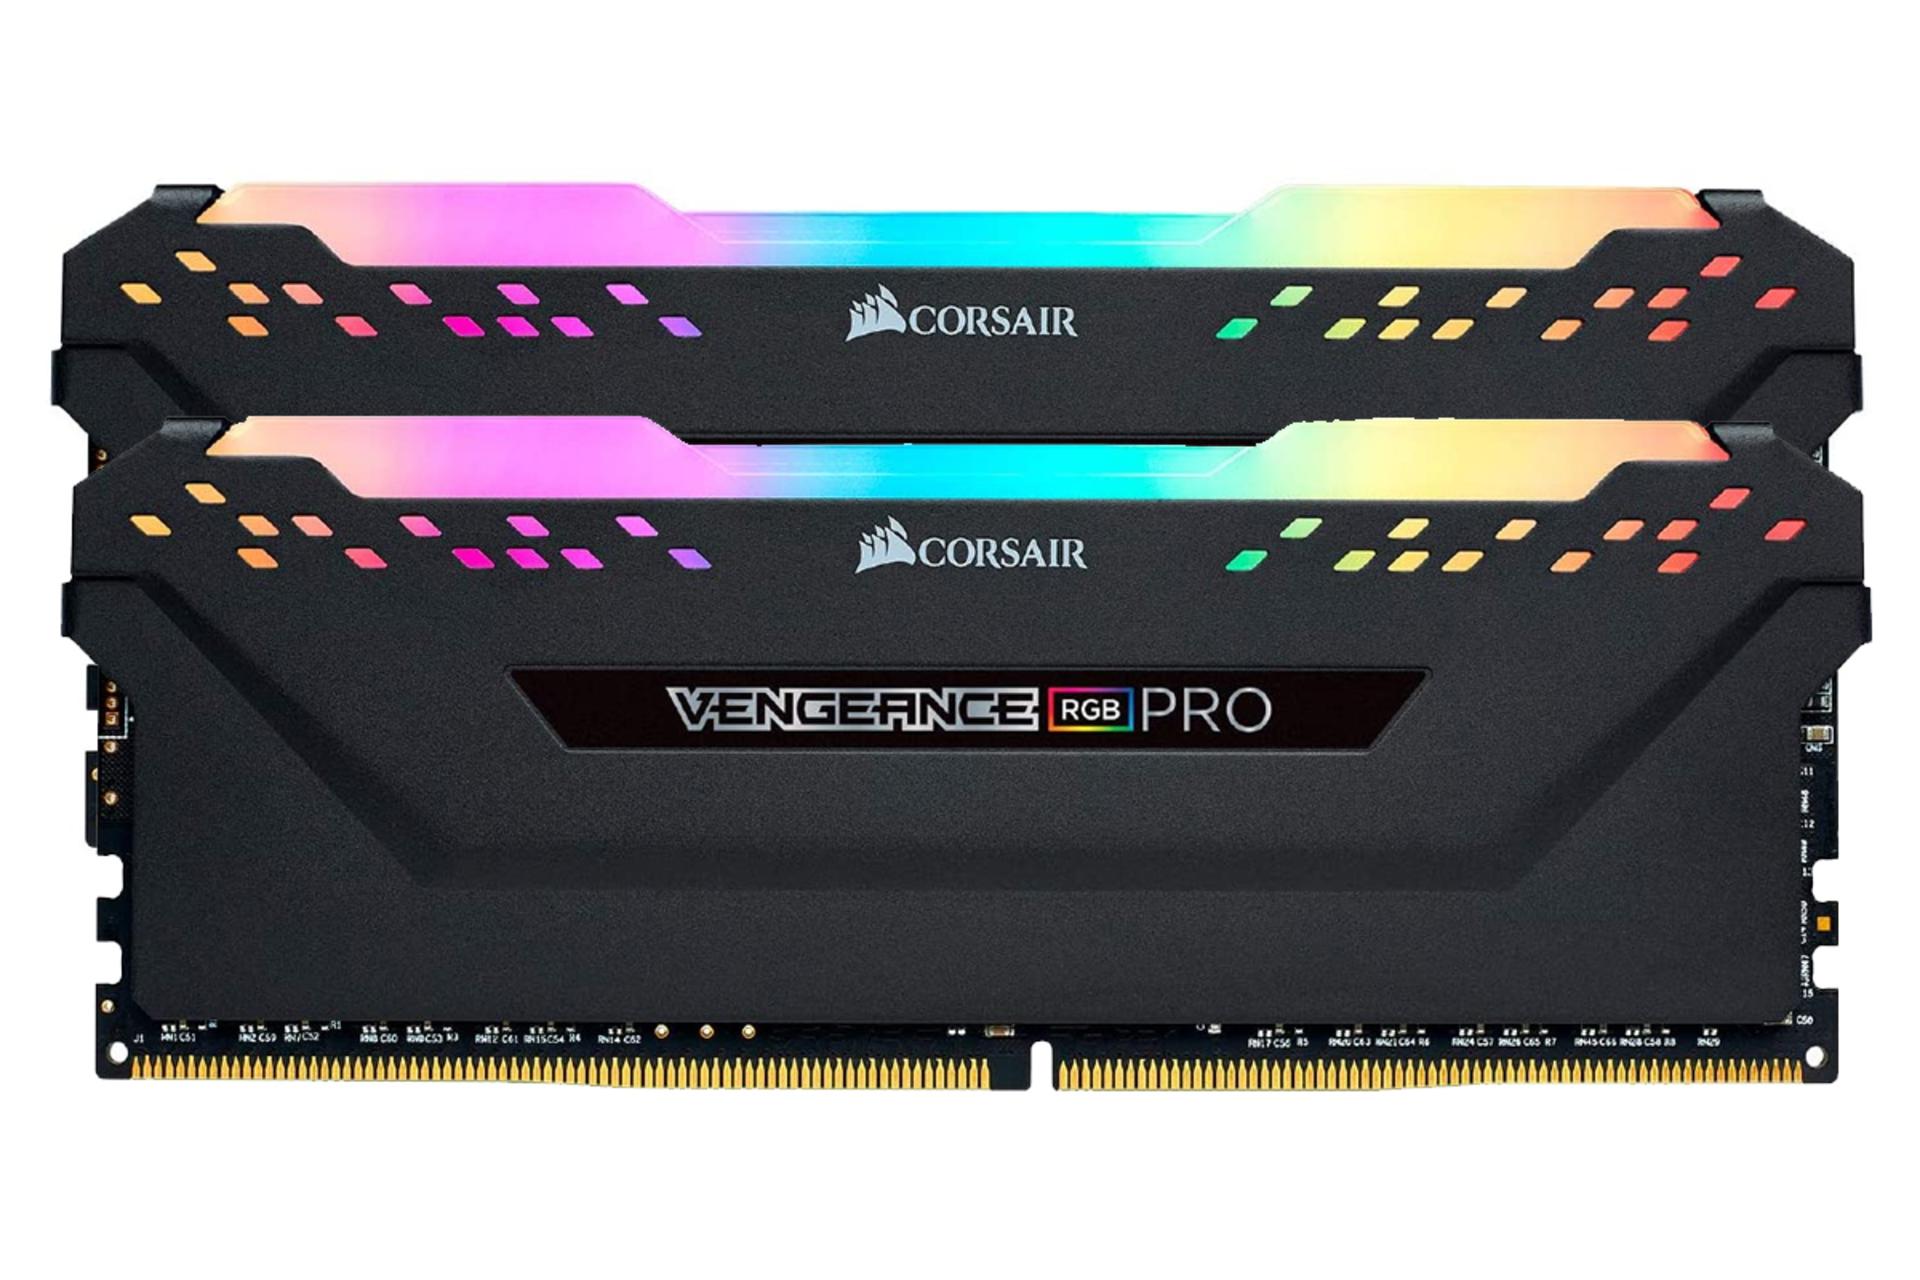 مرجع متخصصين ايران نماي جلو رم كورسير VENGEANCE RGB PRO ظرفيت 32 گيگابايت (2x16) از نوع DDR4-3600